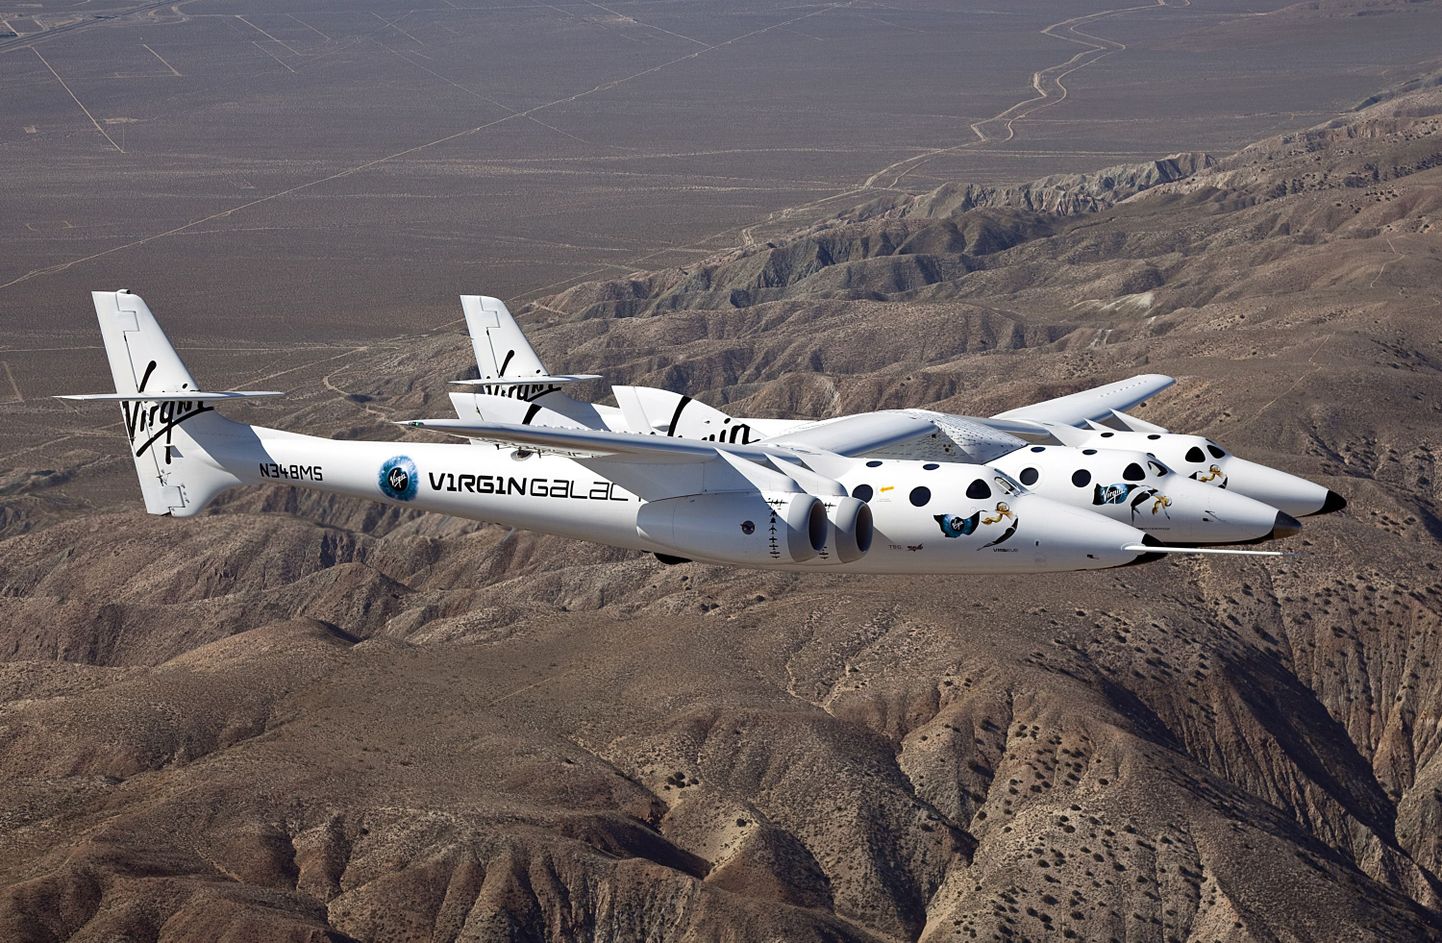 Pildil on Virgin Galacticu ülehelikiiruse saavutanud kosmoselennuk SpaceShipTwo, millega plaanitakse esimest kommertssõitu kosmosesse juba sel aastal.